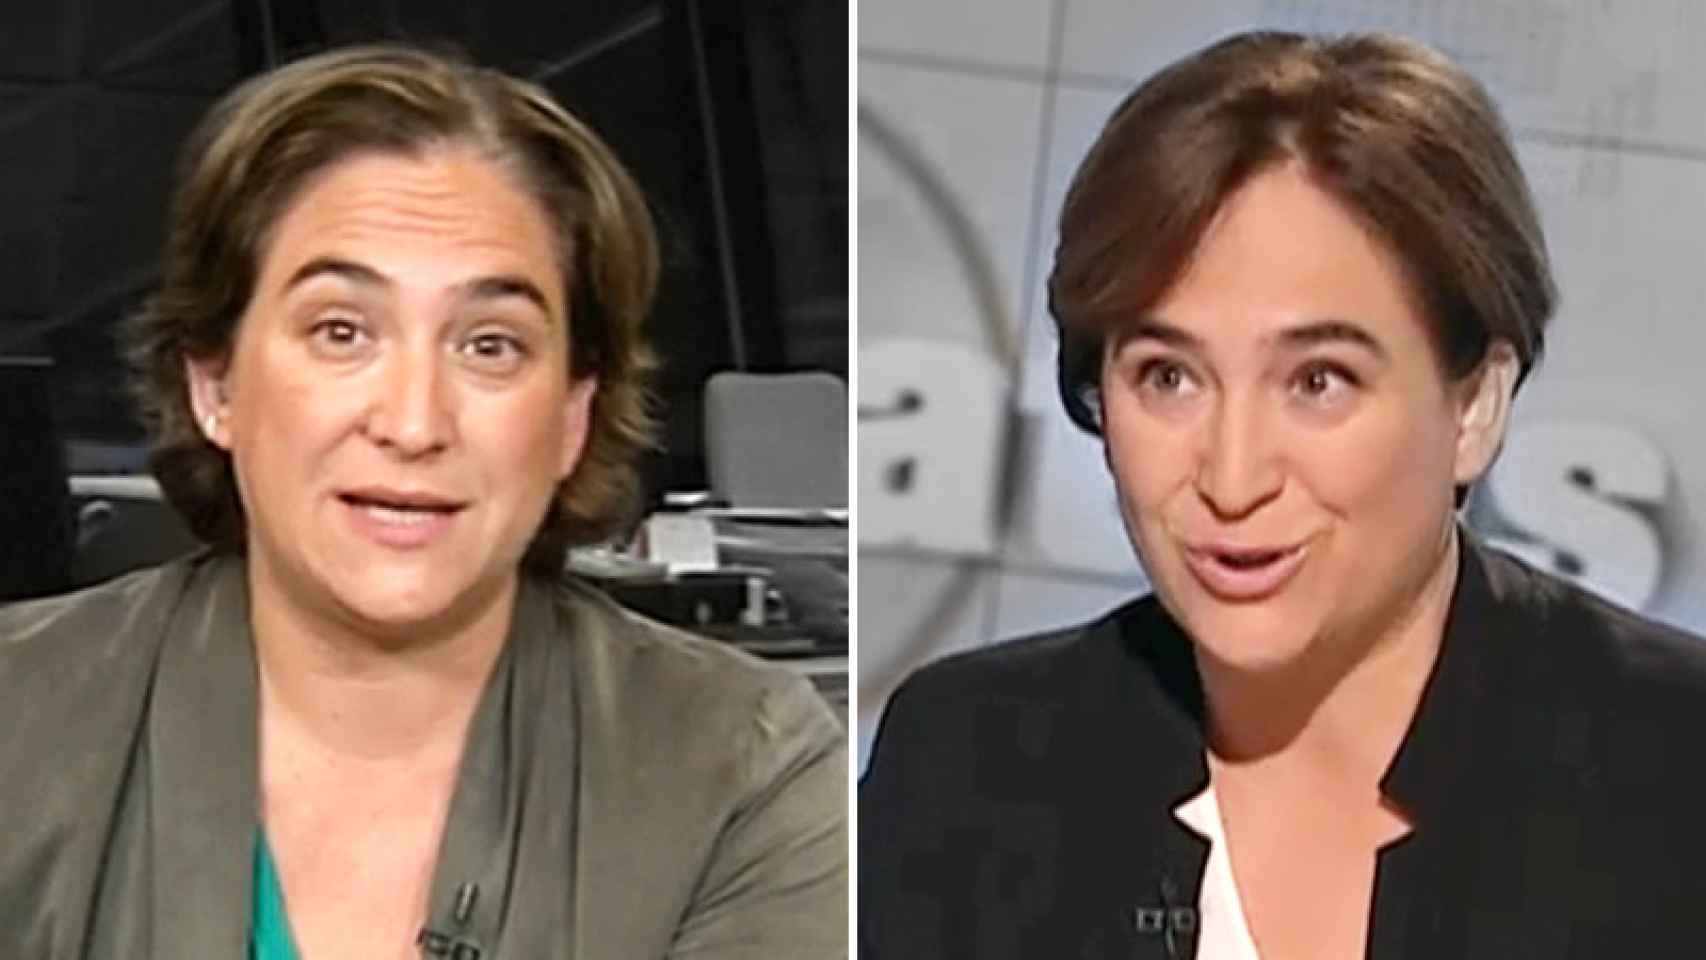 A la derecha, la alcaldesa de Barcelona, Ada Colau, este miércoles en TV3. A la izquierda, en una aparición anterior en televisión.